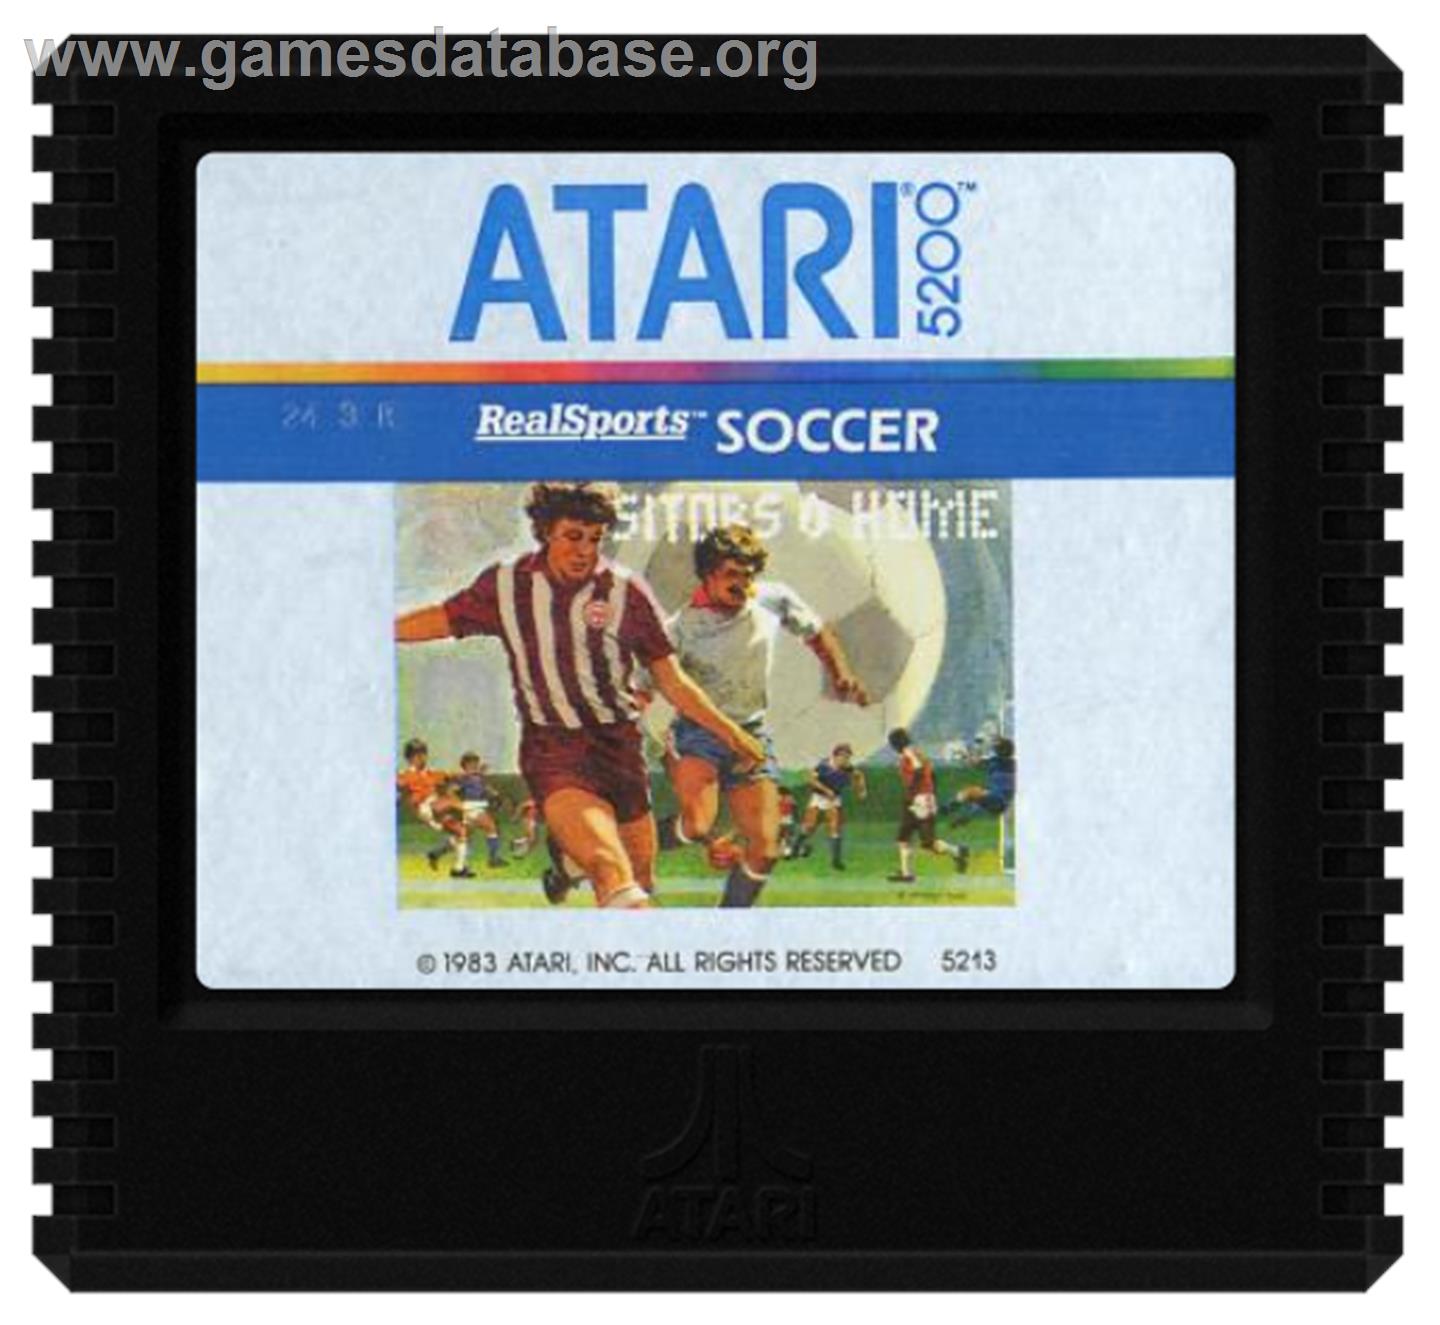 RealSports Soccer - Atari 5200 - Artwork - Cartridge